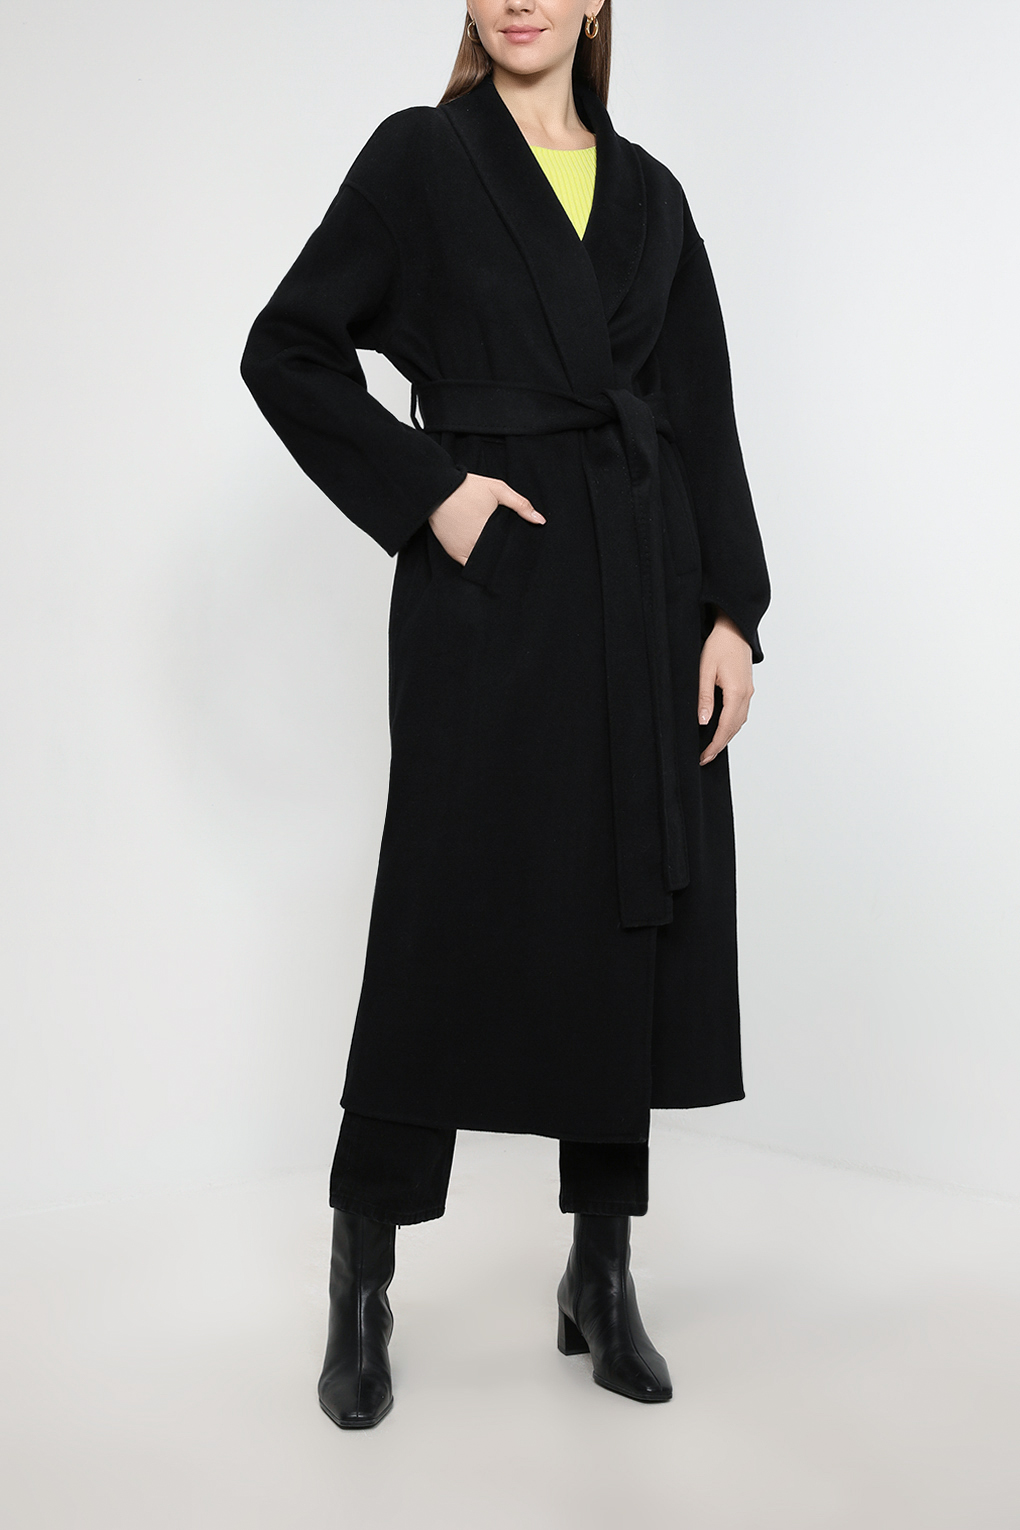 Пальто женское SABRINA SCALA SS23016206-001 черное 48 RU